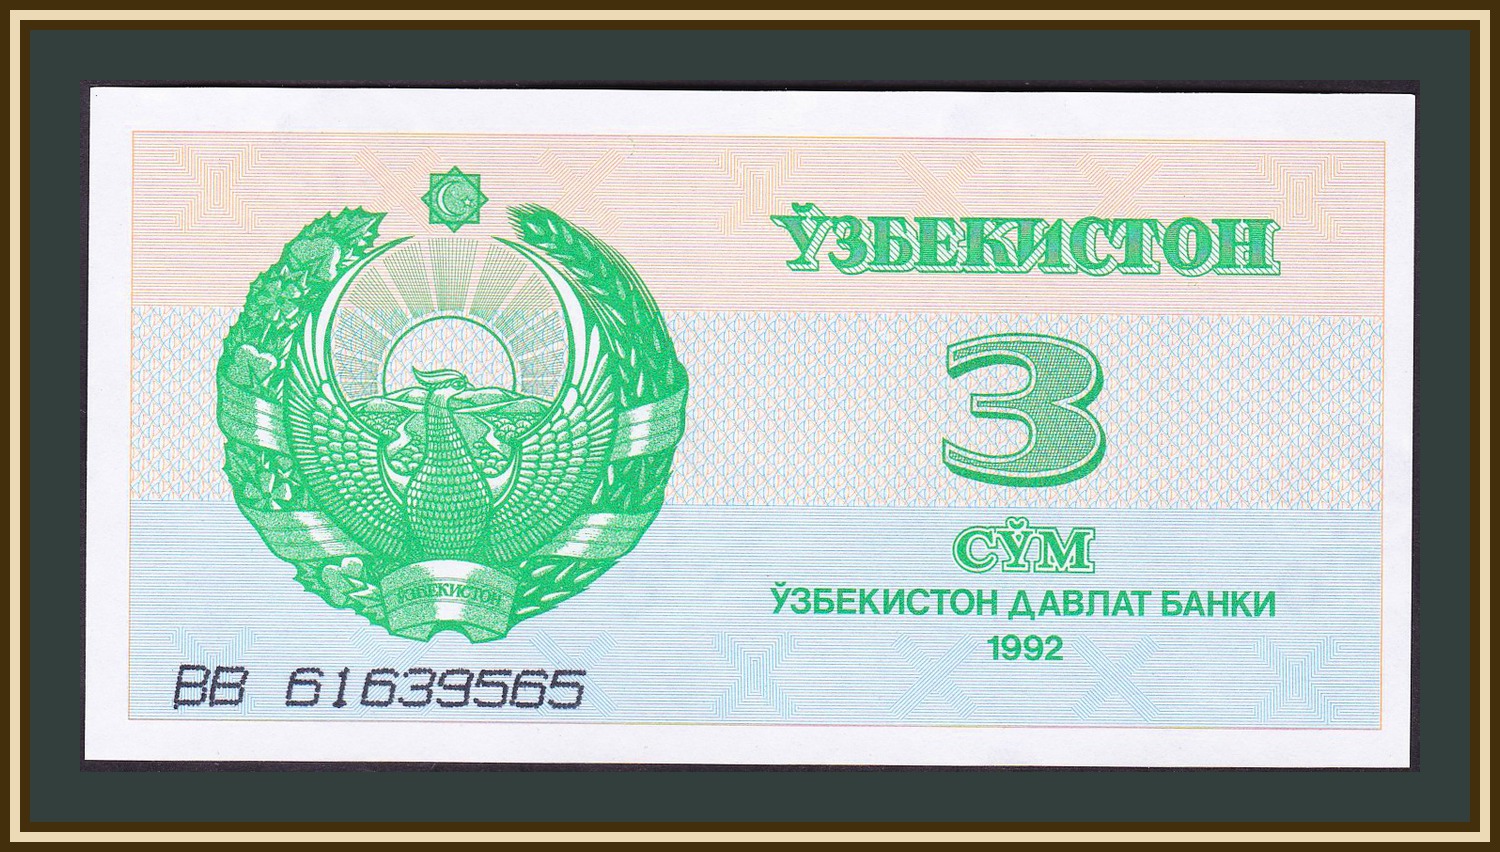 Н сум. Банкнота Узбекистан 5 сум 1992. 3 Сум Узбекистан 1992. Купюры Узбекистана 1992 года. Купюра Узбекистана 3 сум.